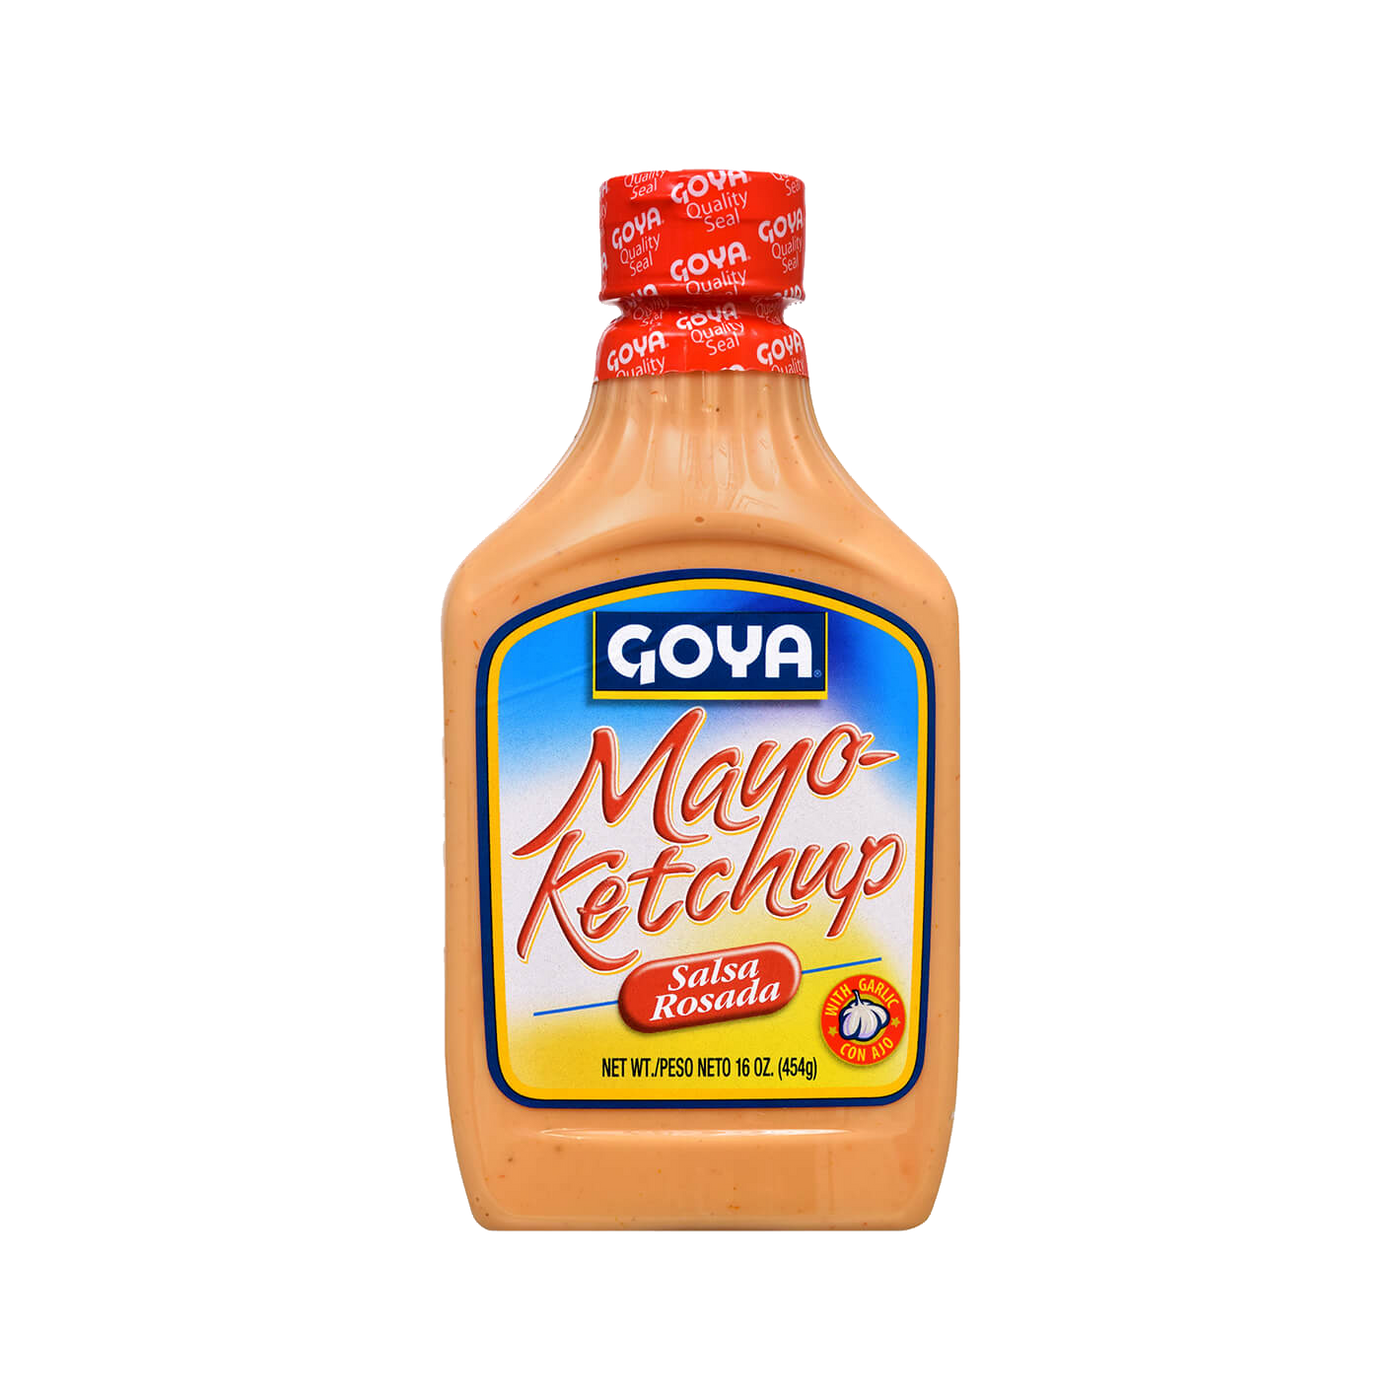   Goya Mayo Ketchup